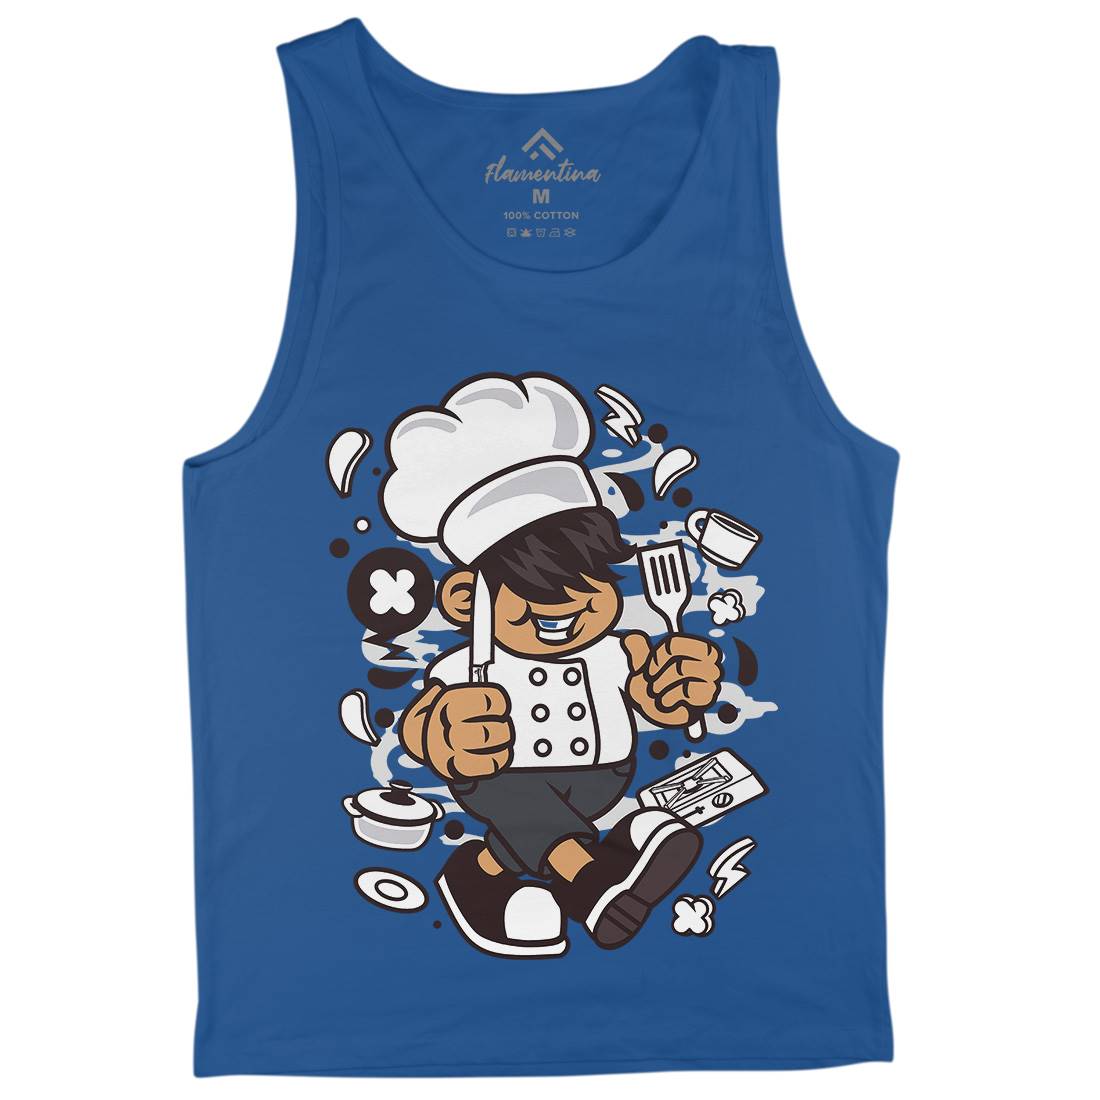 Chef Kid Mens Tank Top Vest Work C057